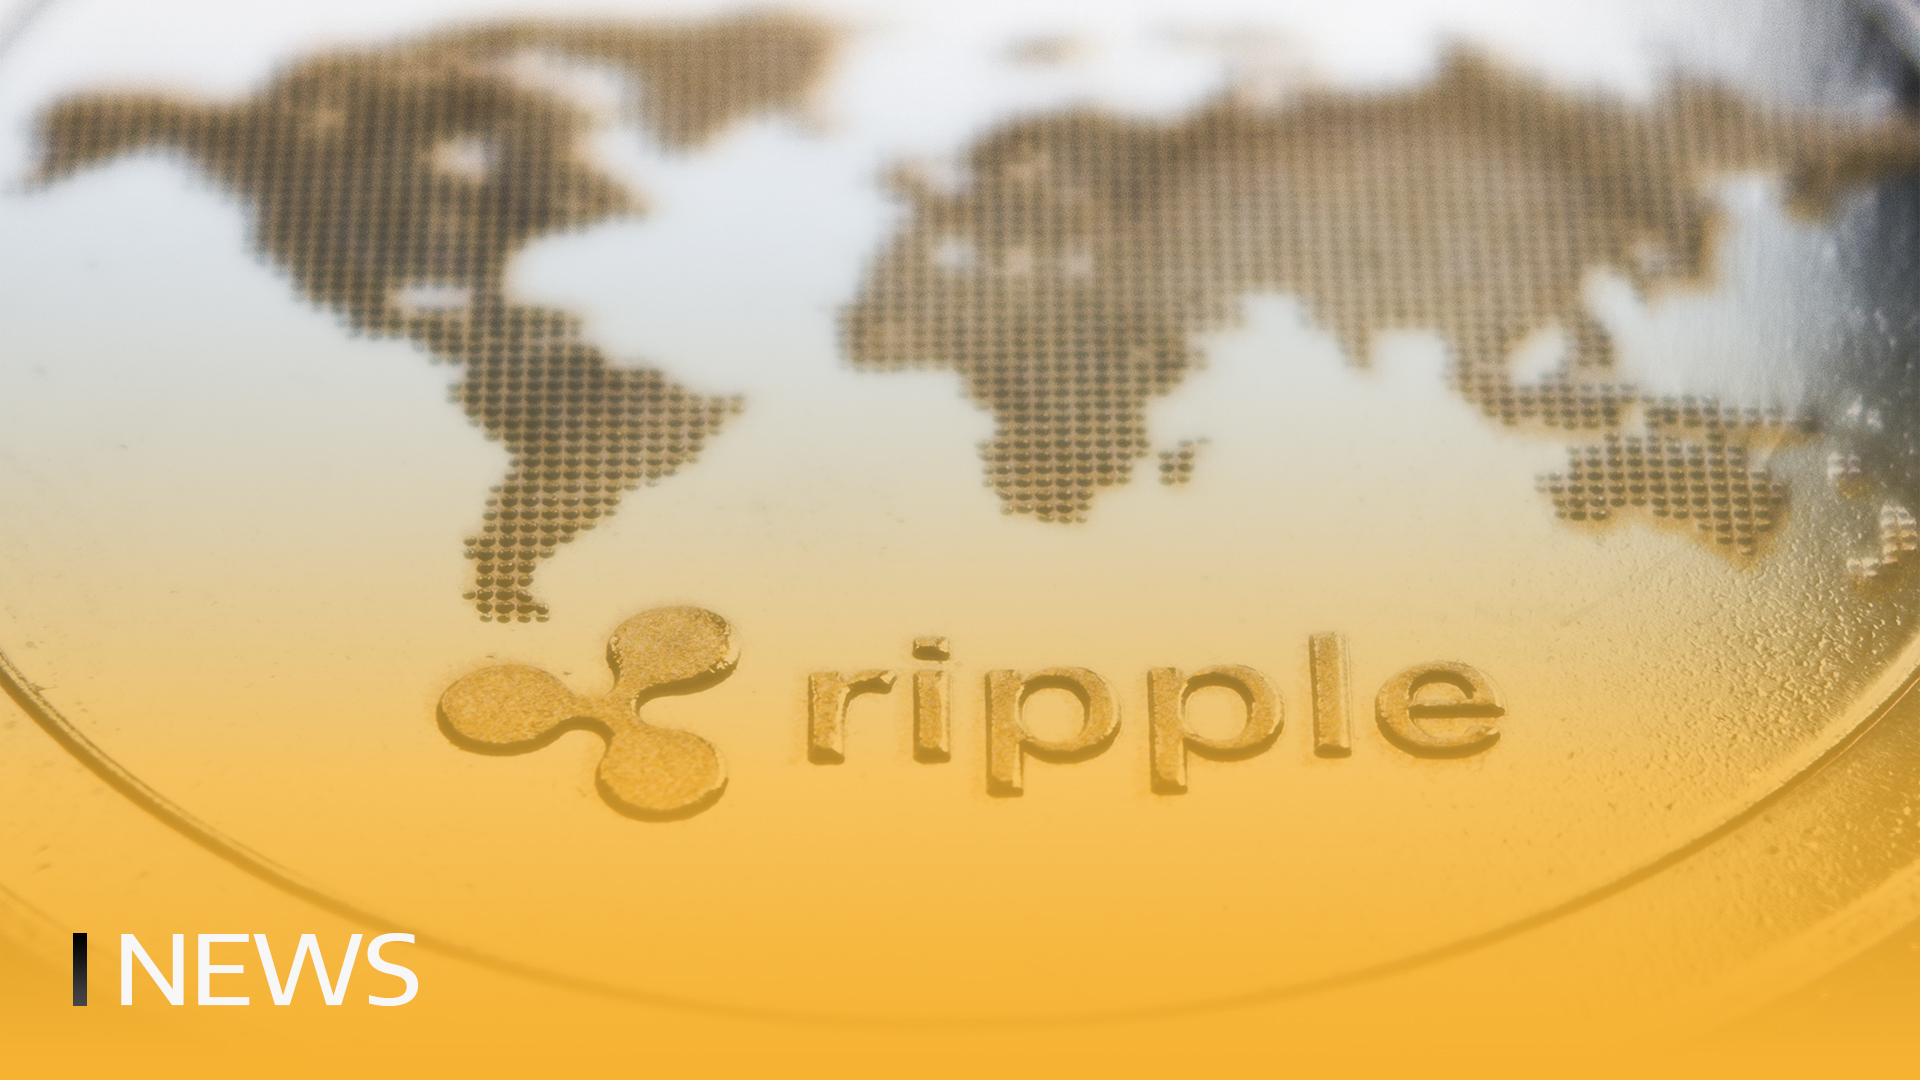 A Ripple vai lançar uma moeda estável em dólares americanos